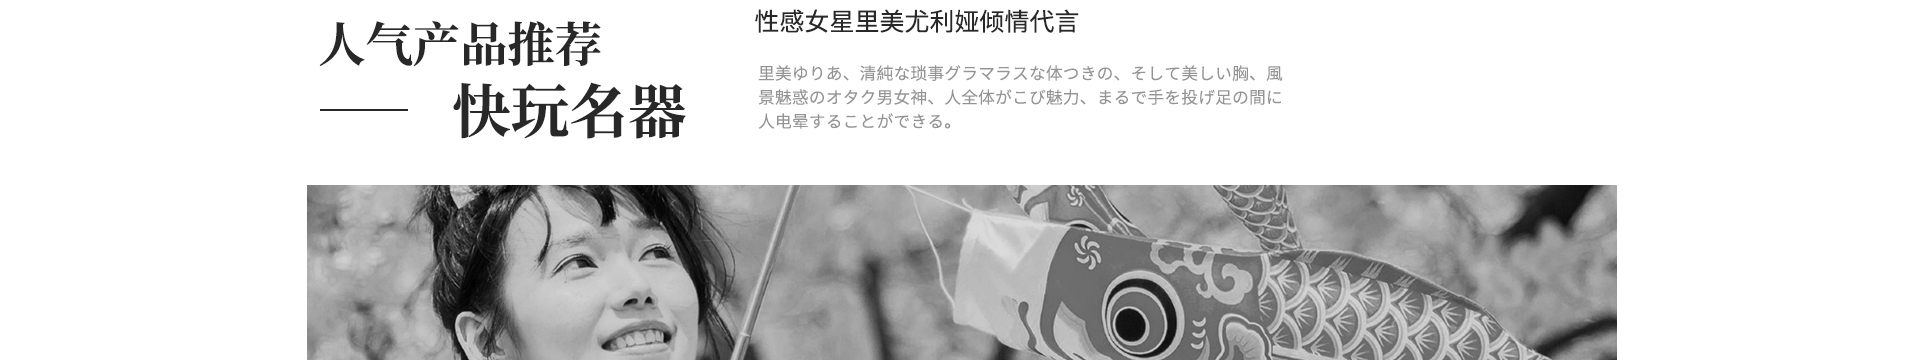 日本NPG名器创生里美尤利娅男用飞机杯自慰器情趣用具成人性用品